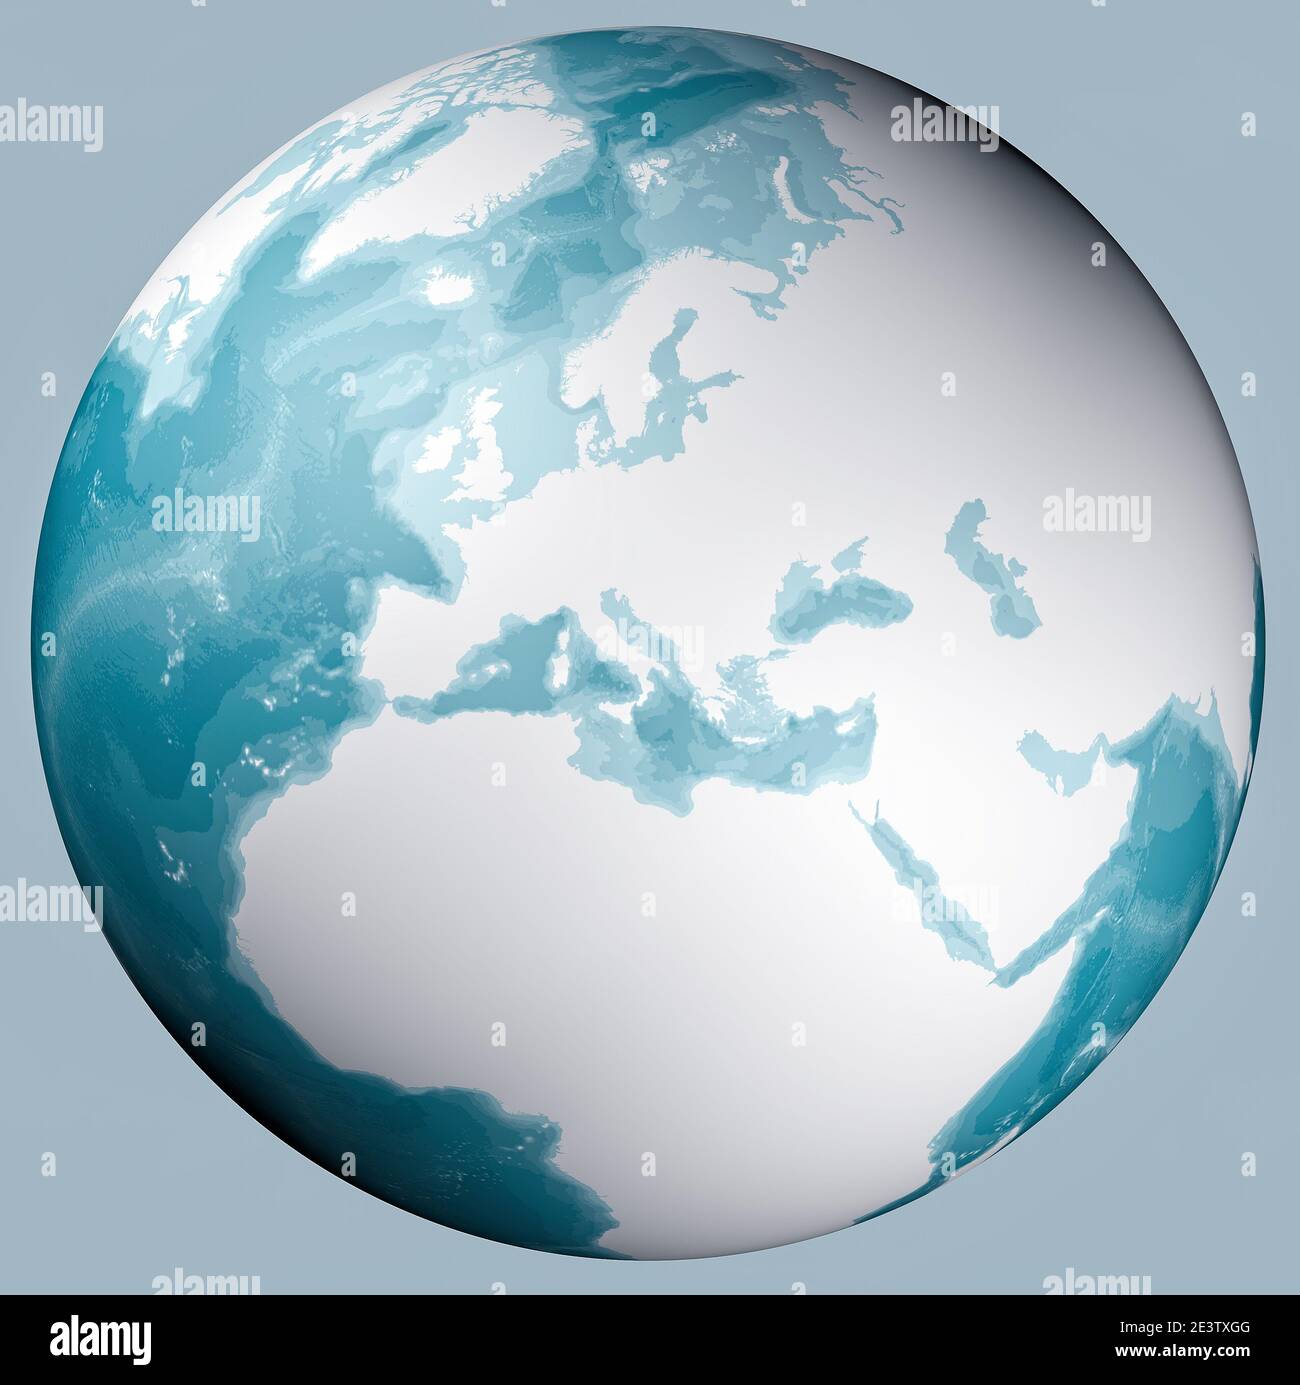 Weltkarte des Mittelmeers und Europas, Afrikas und des Nahen Ostens. Kartographie, geographischer Atlas. Bathymetrie, Unterwassertiefe des Ozeans Stockfoto